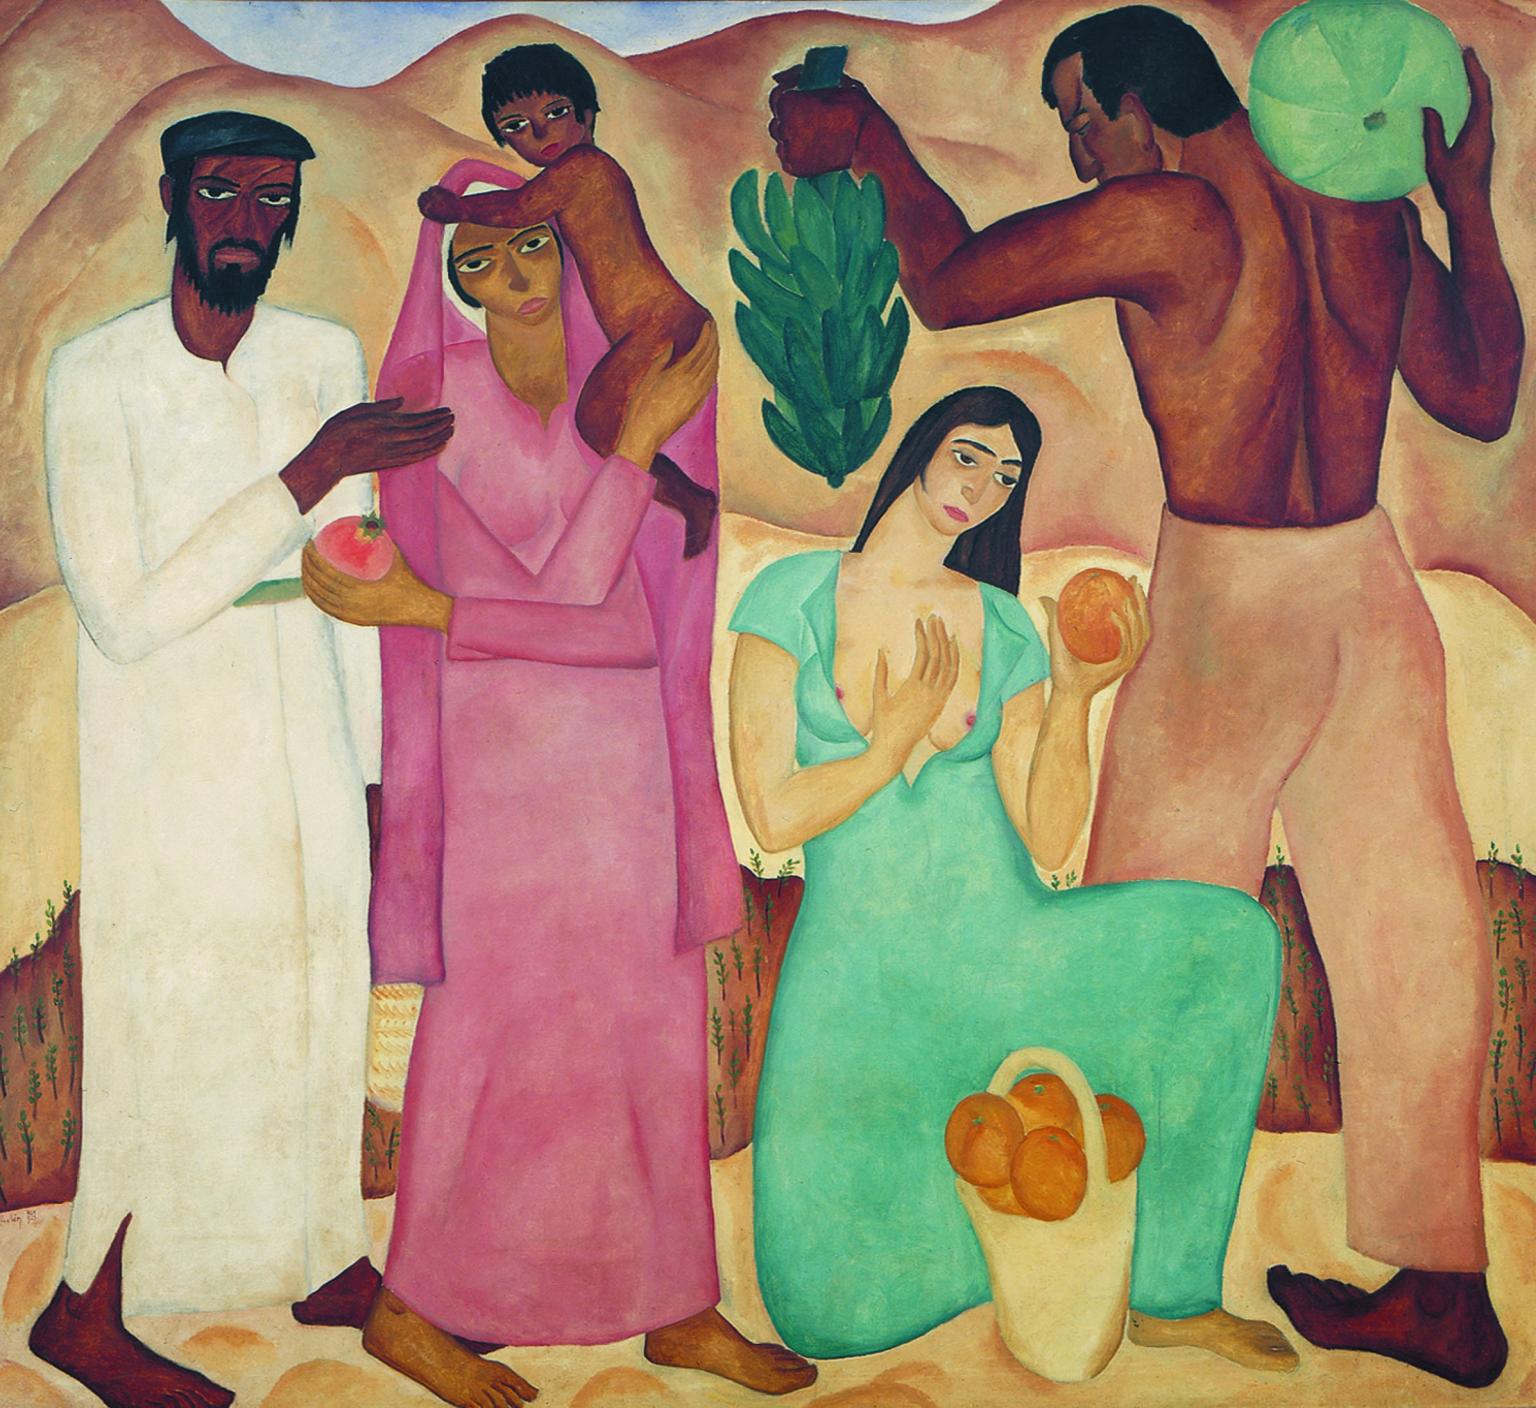 Painting of men, women and children holding fruit in desert. 